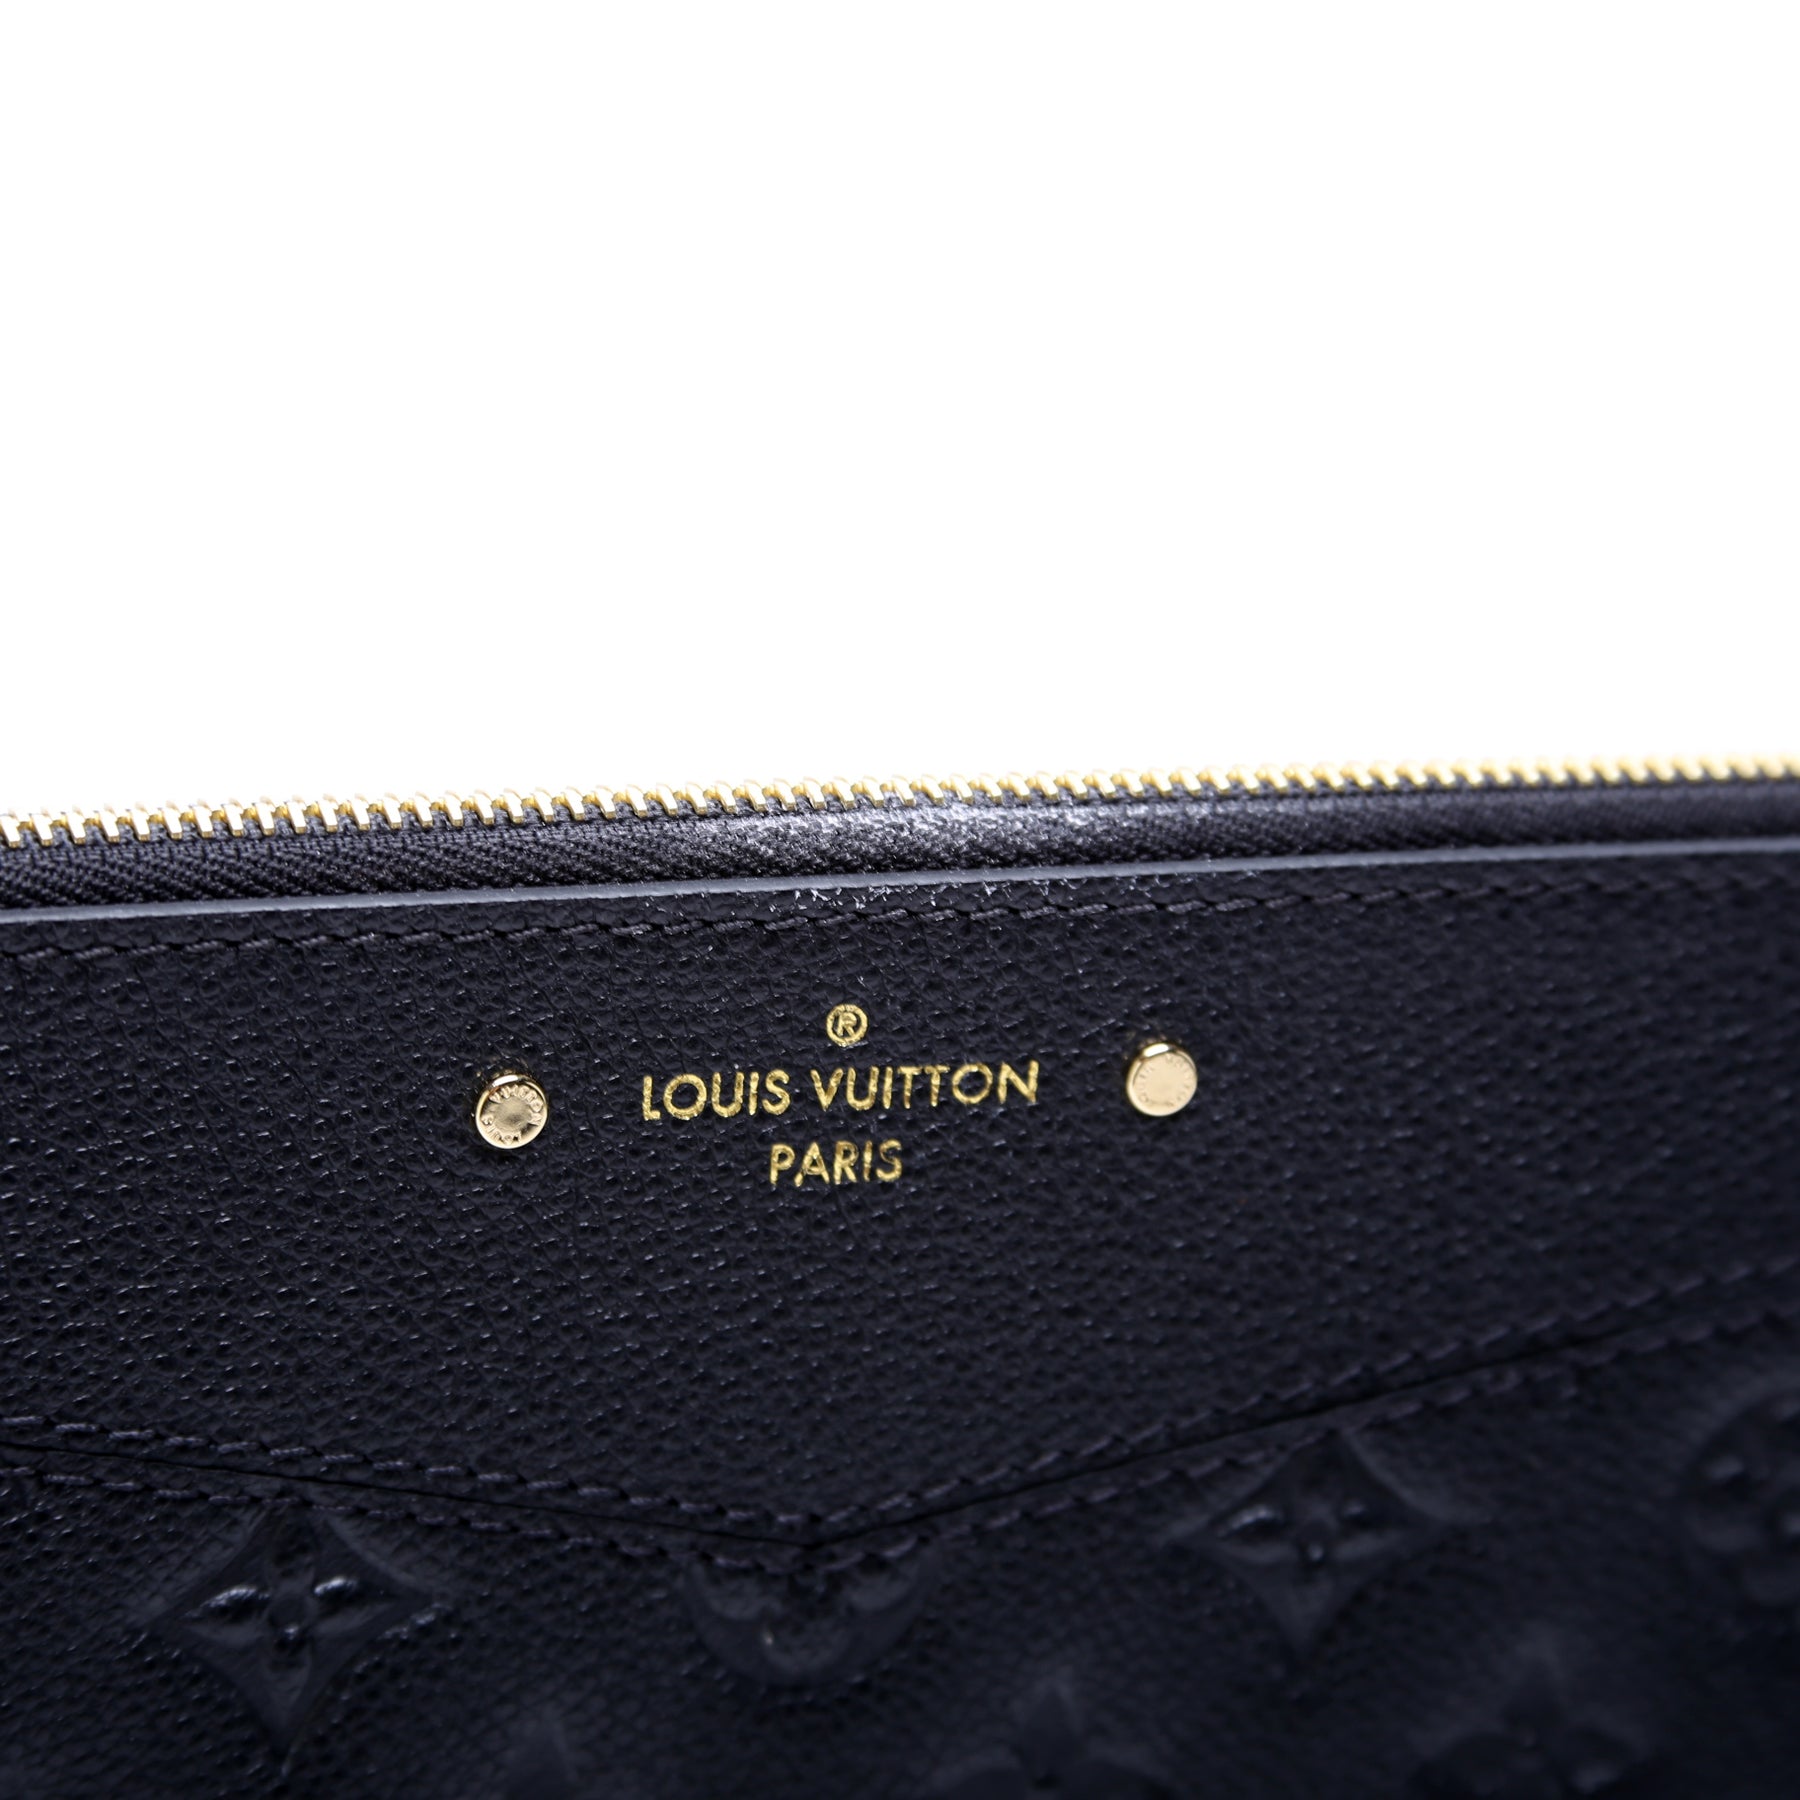 Authentic Louis Vuitton Monogram Empreinte Daily Pouch